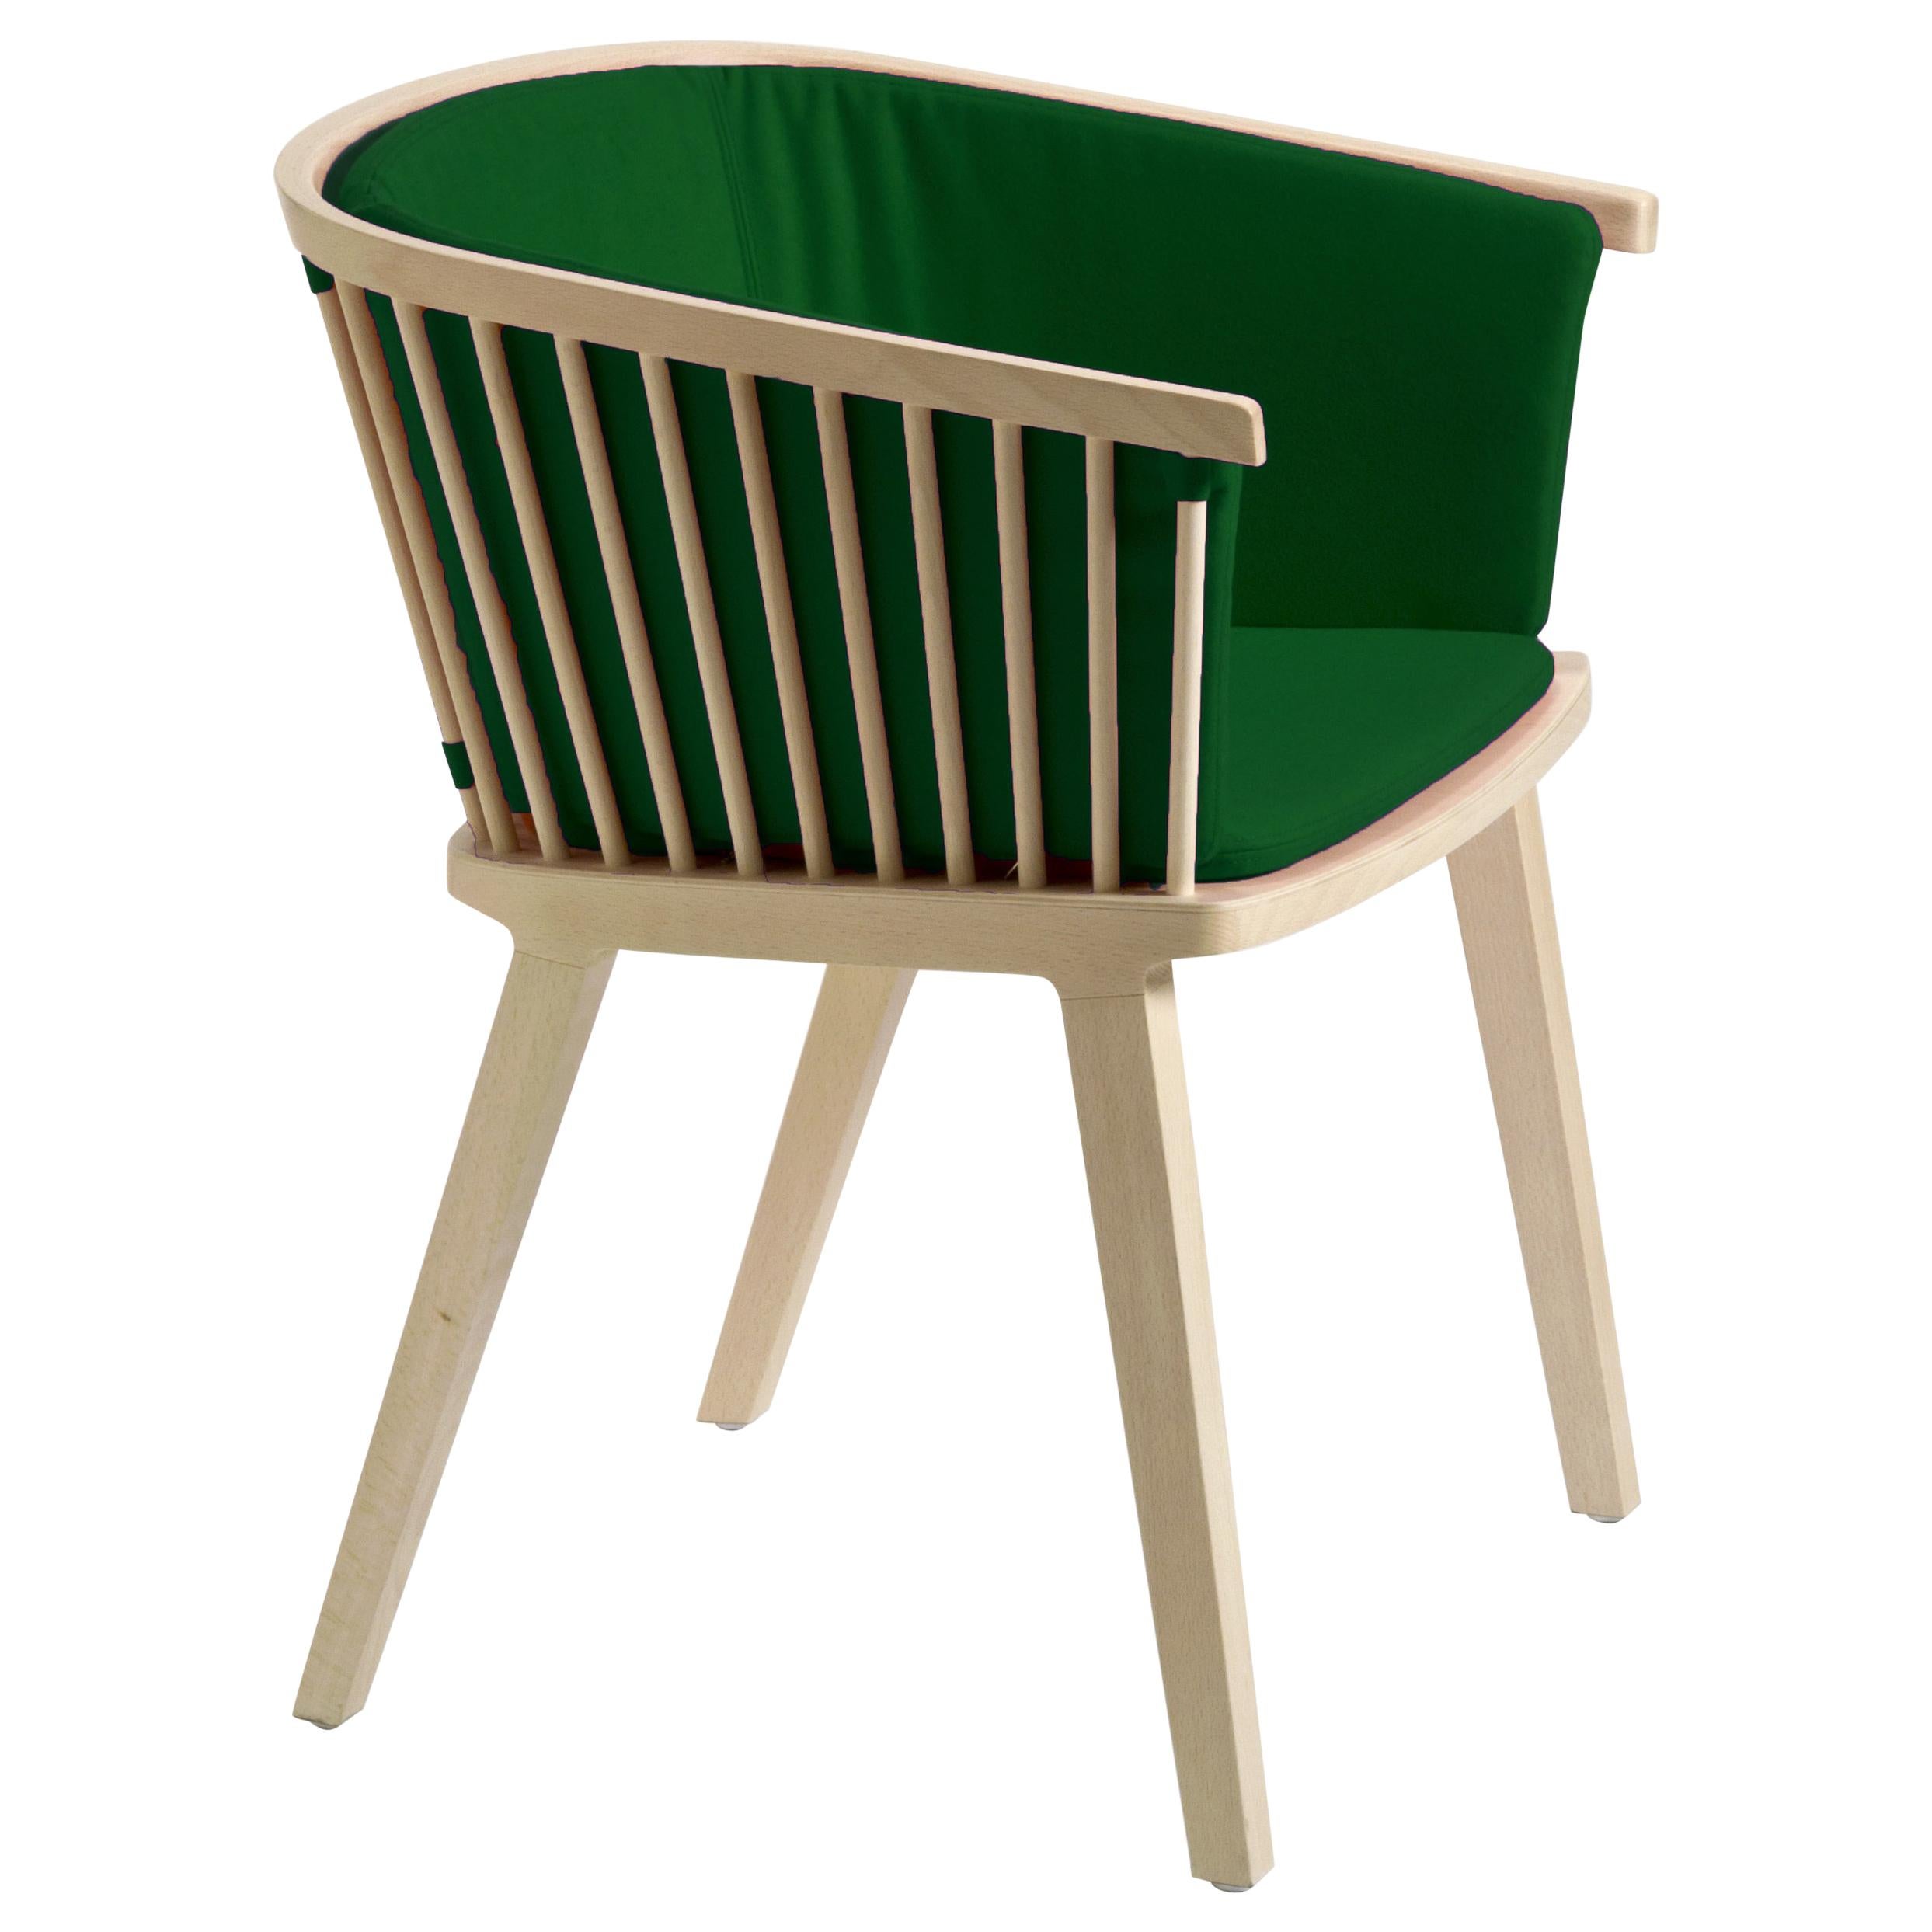 Secreto Armchair in Beechwood Emerald Green Velvet Upholstery, Made in Italy